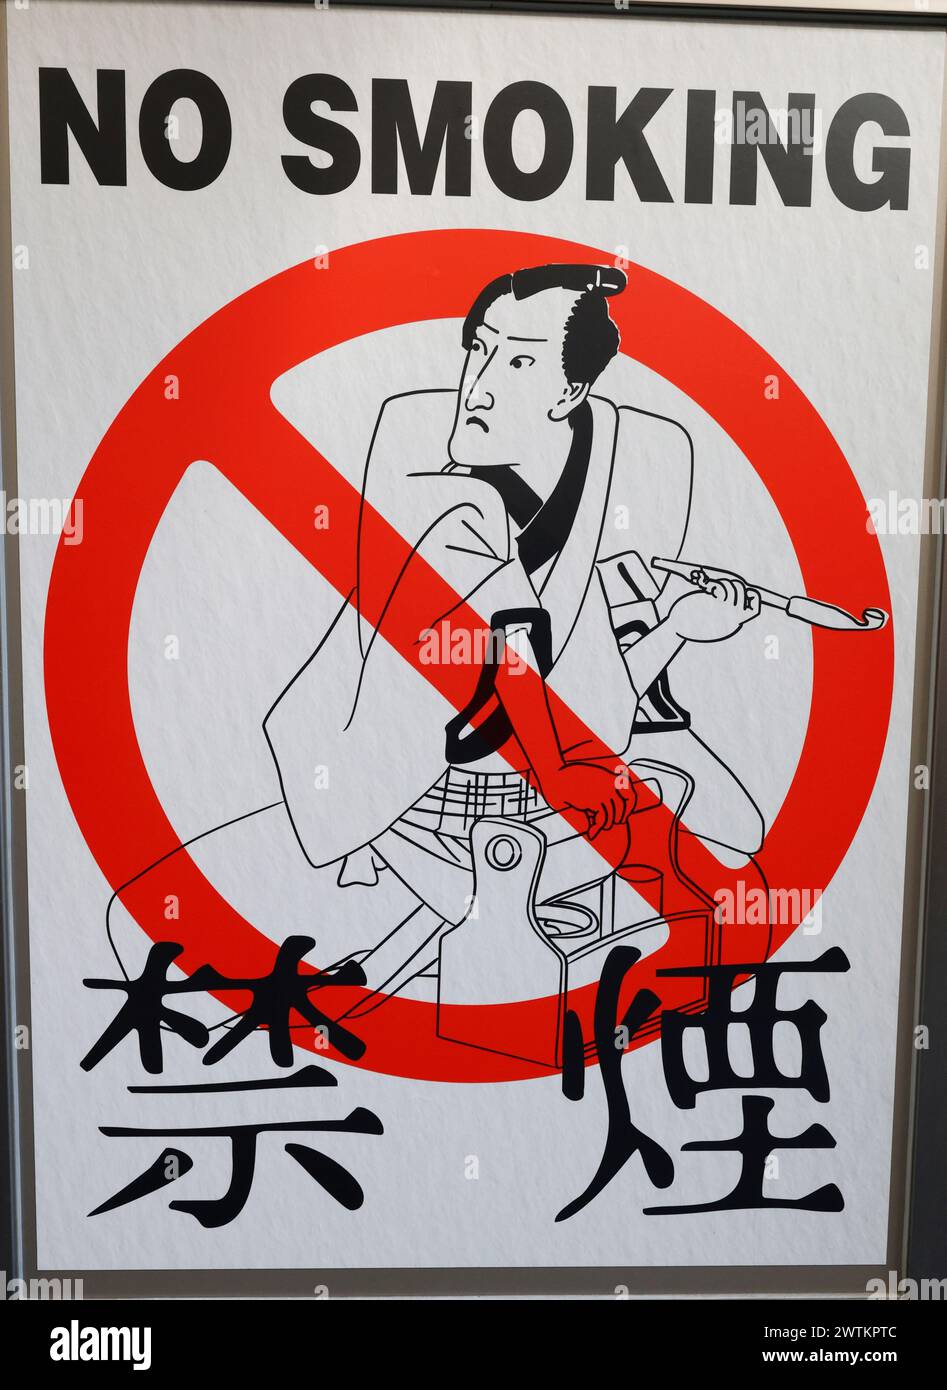 NO SMOKING SIGN TOKYO Stock Photo